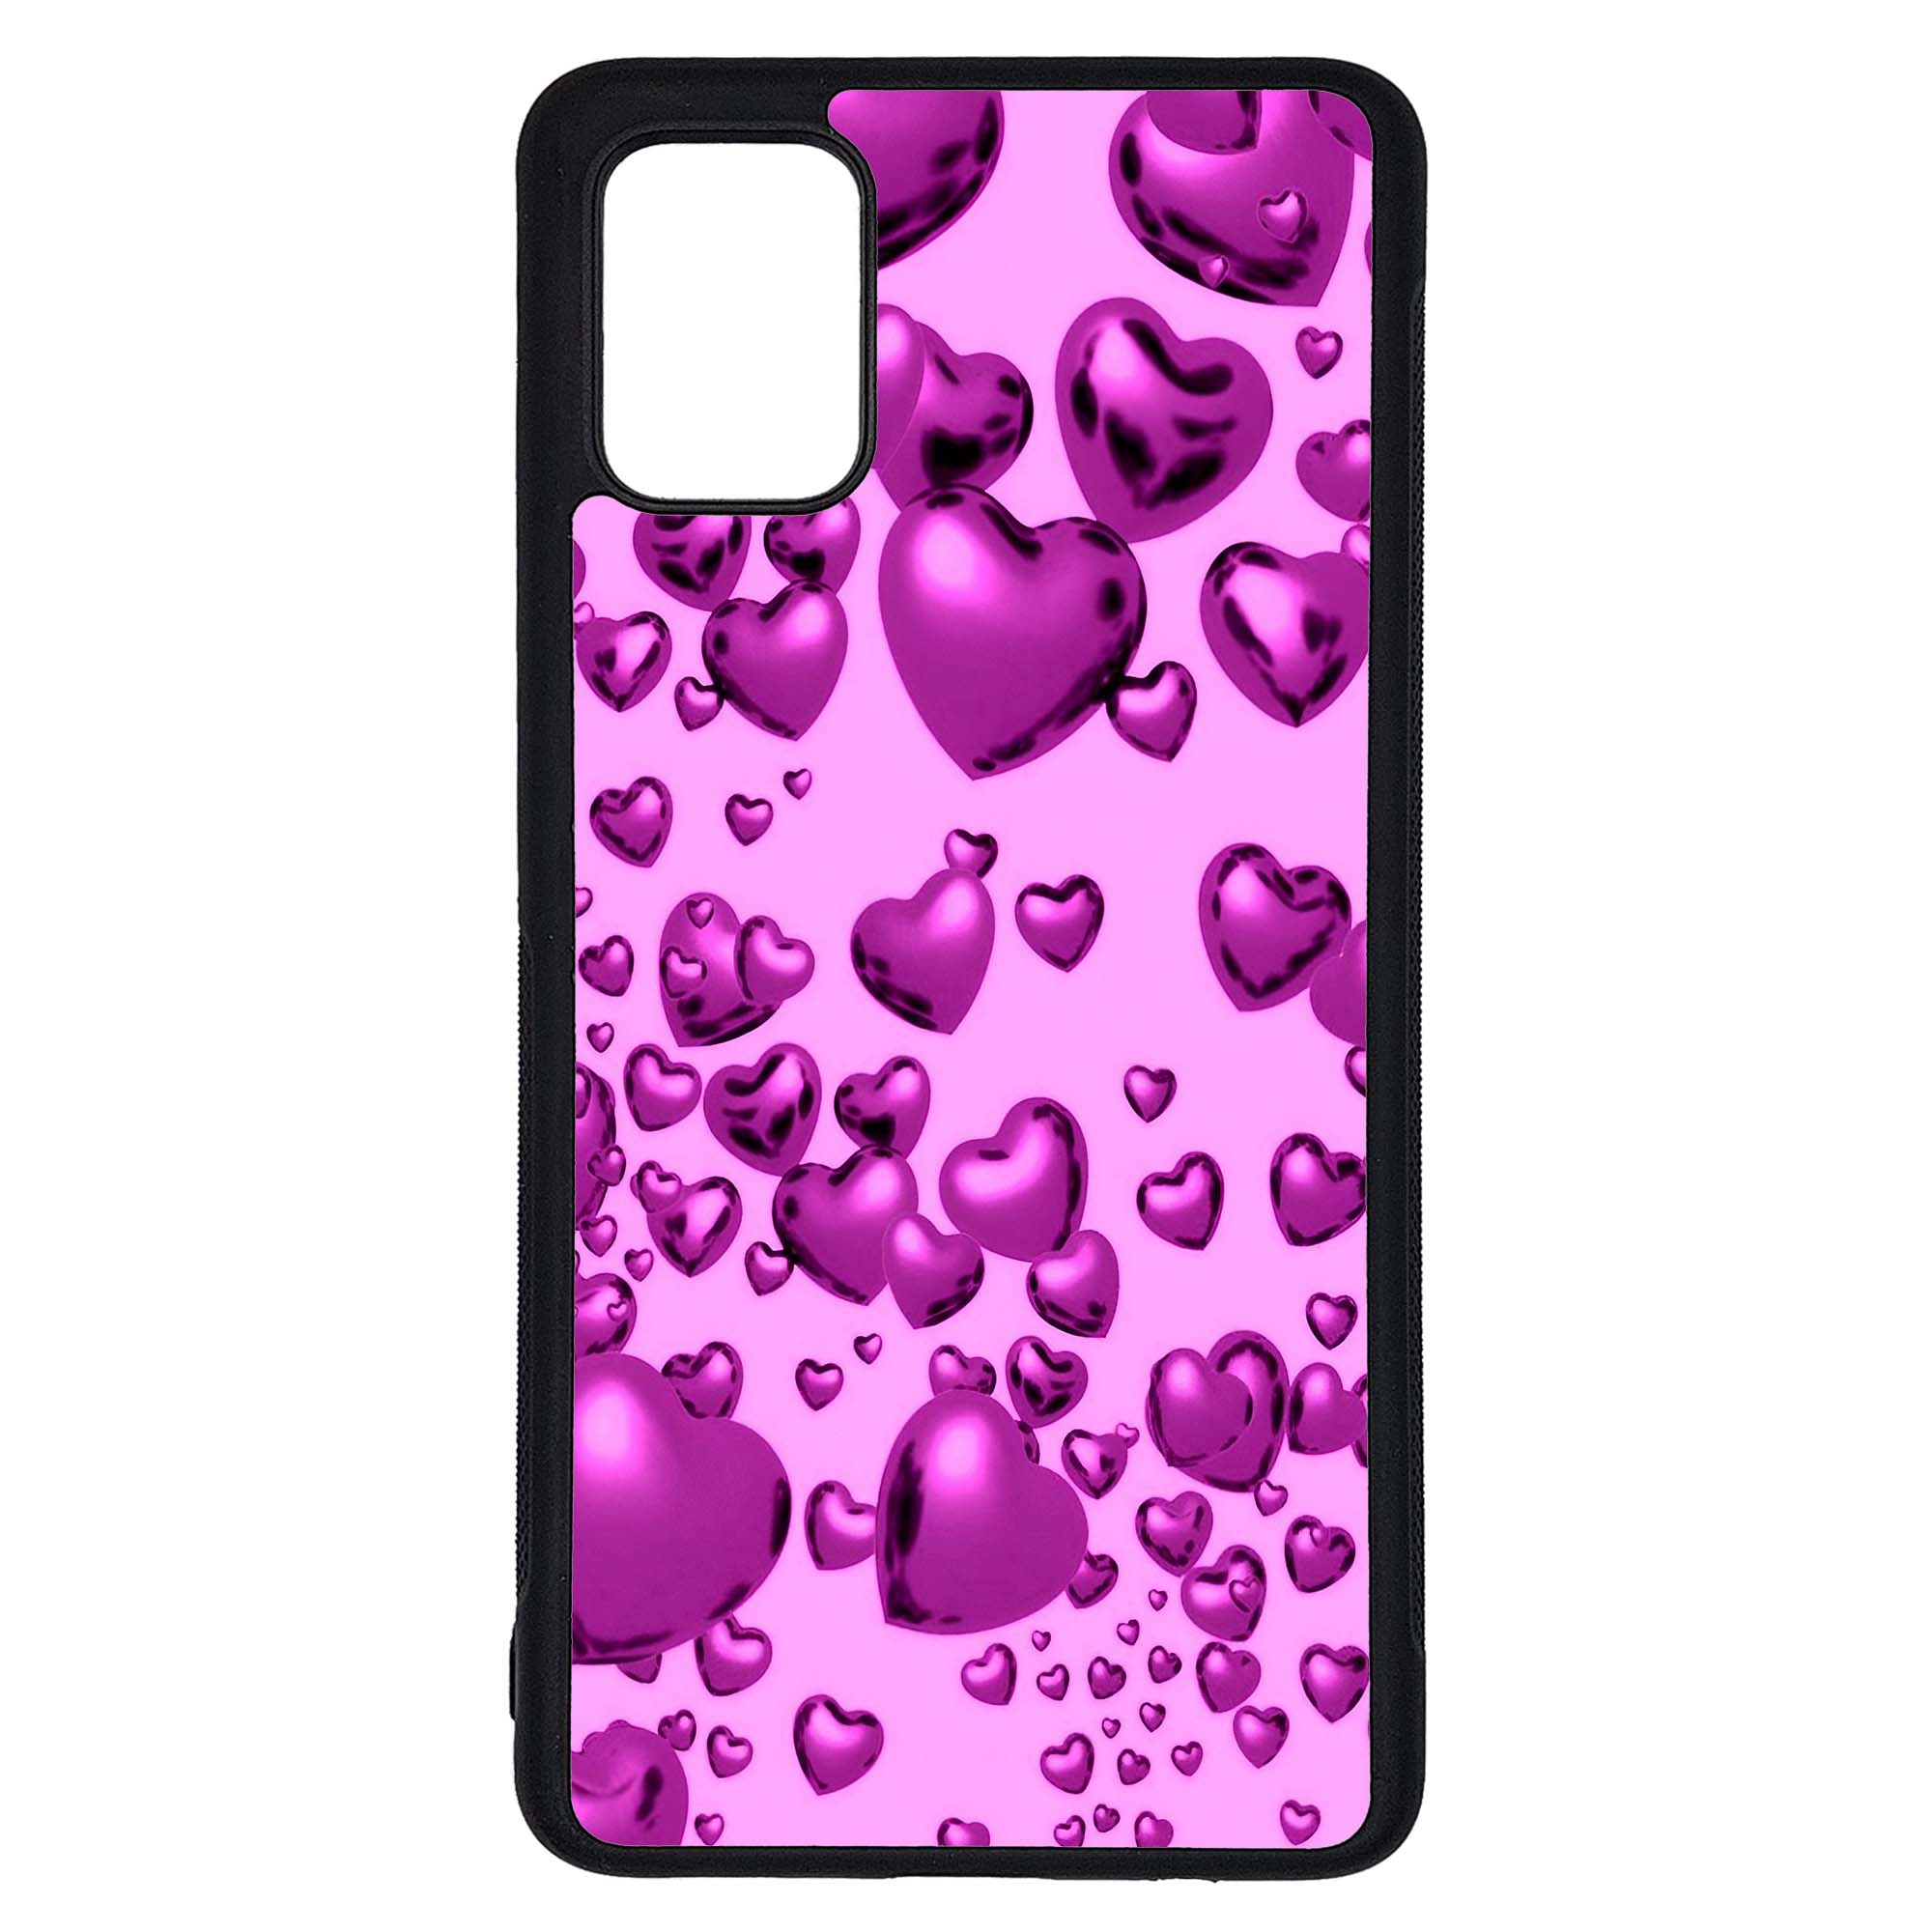 کاور طرح قلبی کد G-009 مناسب برای گوشی موبایل سامسونگ Galaxy A51